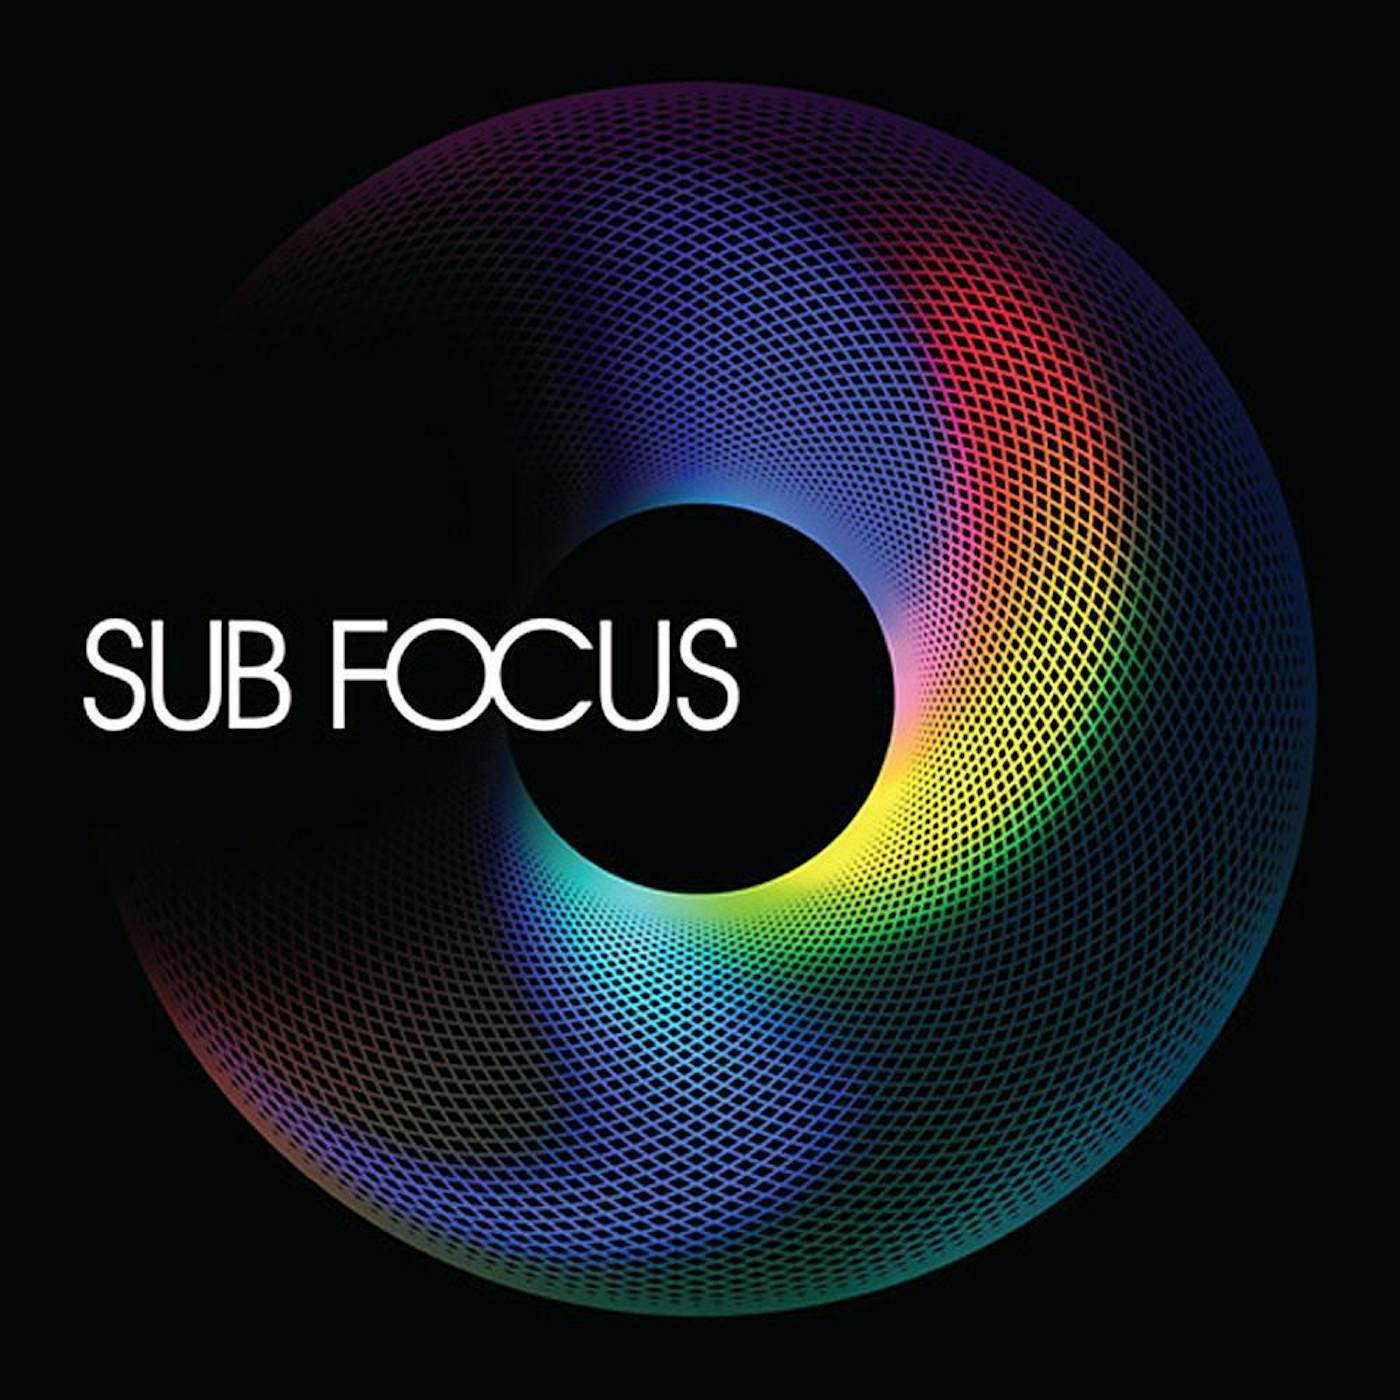 Sub Focus Vinyl Record